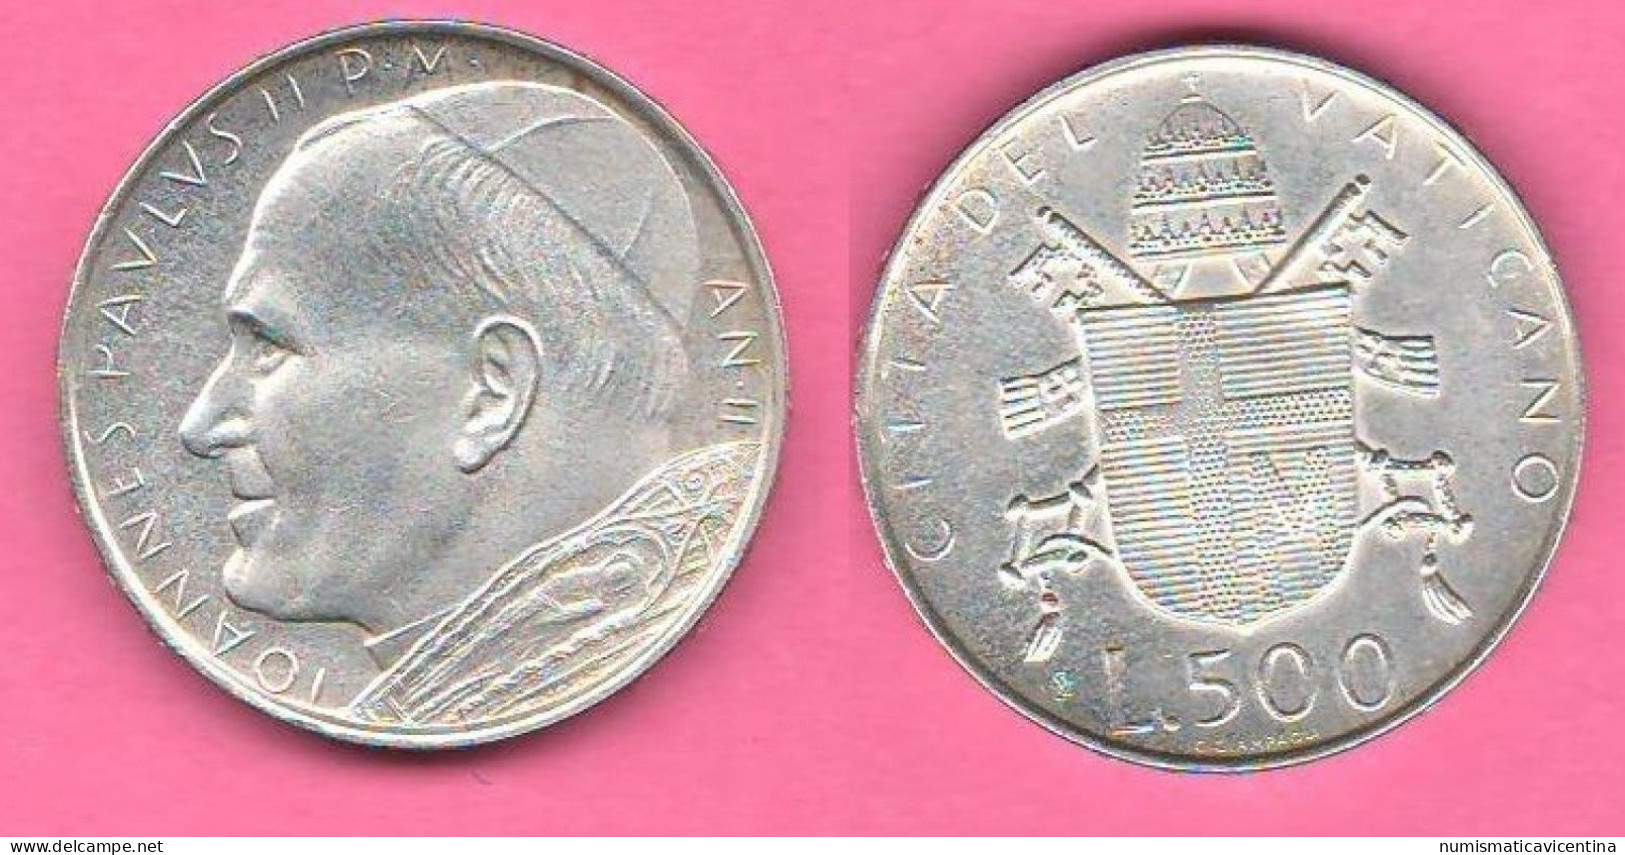 Vaticano 500 Lire 1980 Wojtyla Anno II° Vatican City Italie Italy Silver Coin - Vaticaanstad